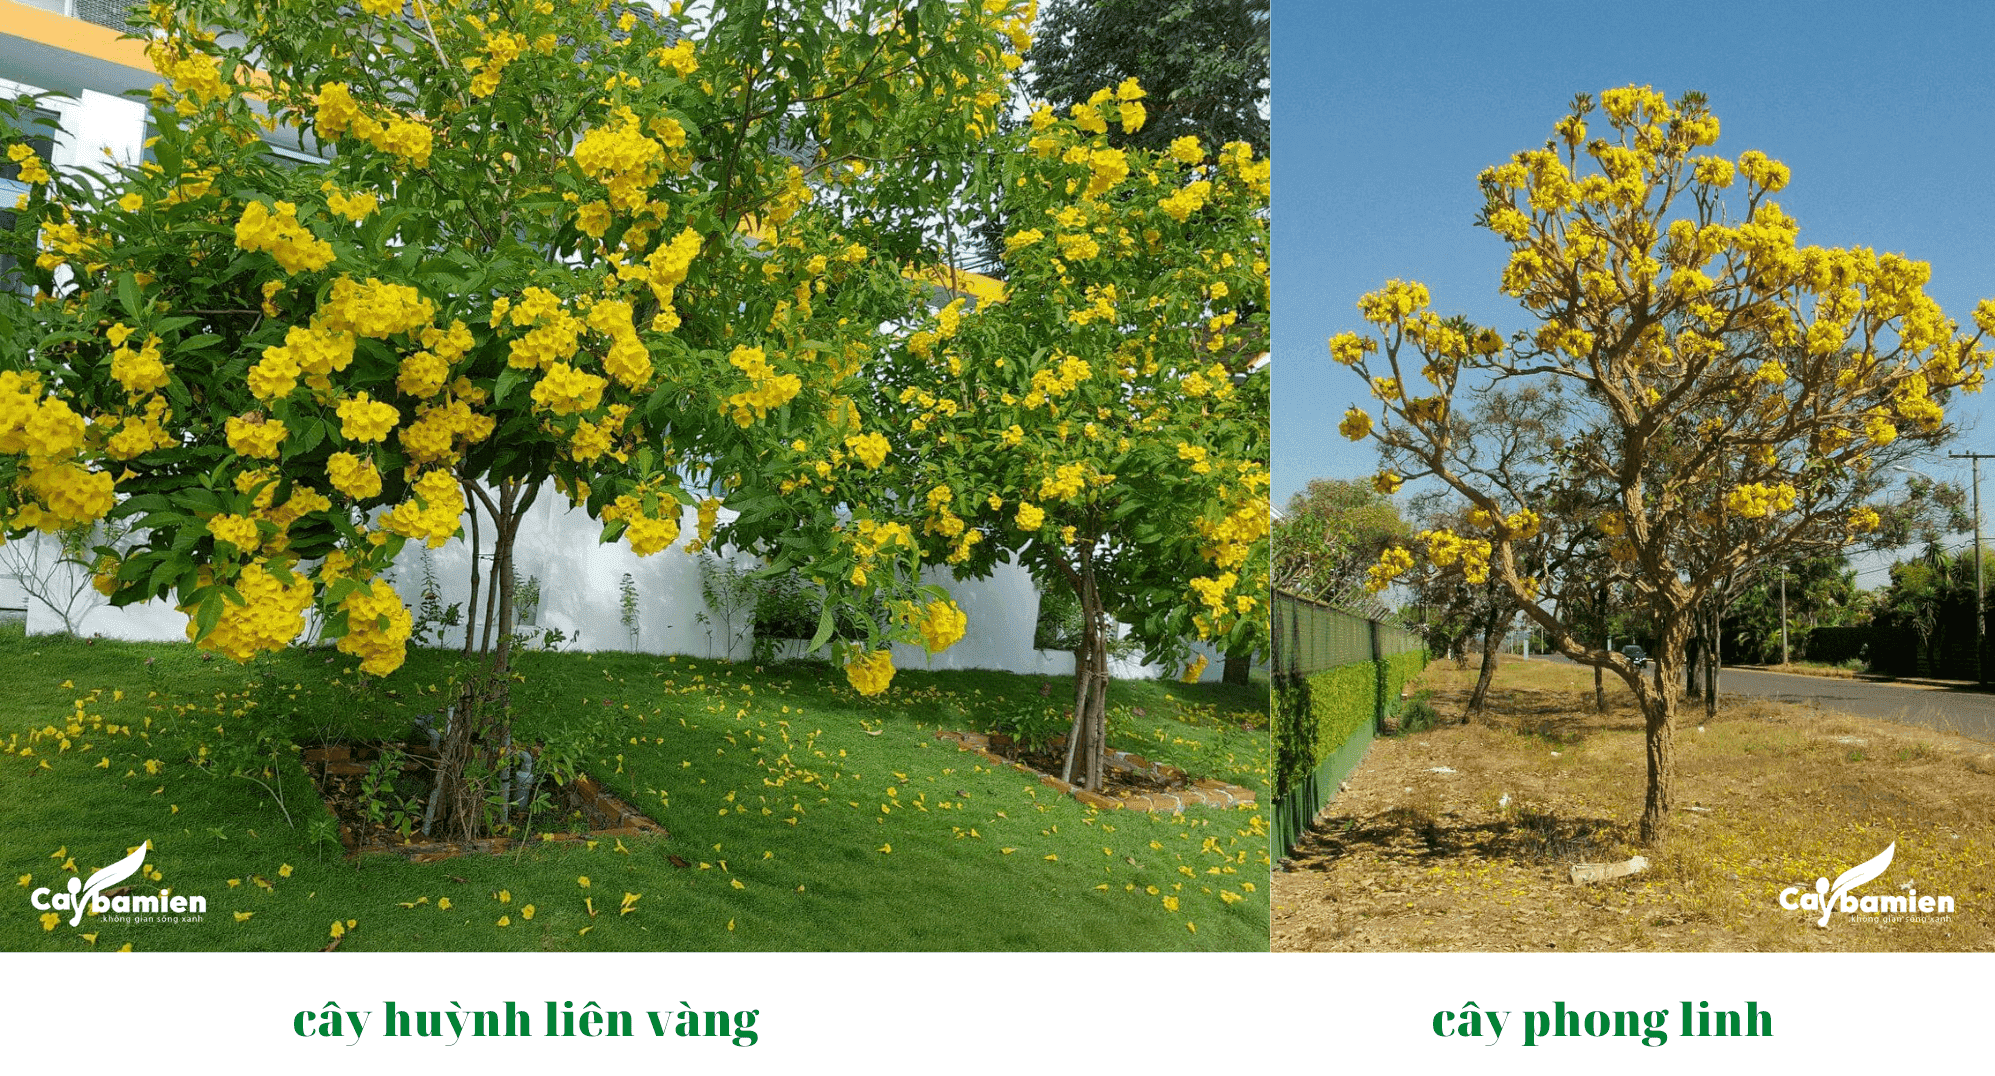 Sự khác nhau giữa cây chuông vàng (huỳnh liên vàng) và cây phong linh